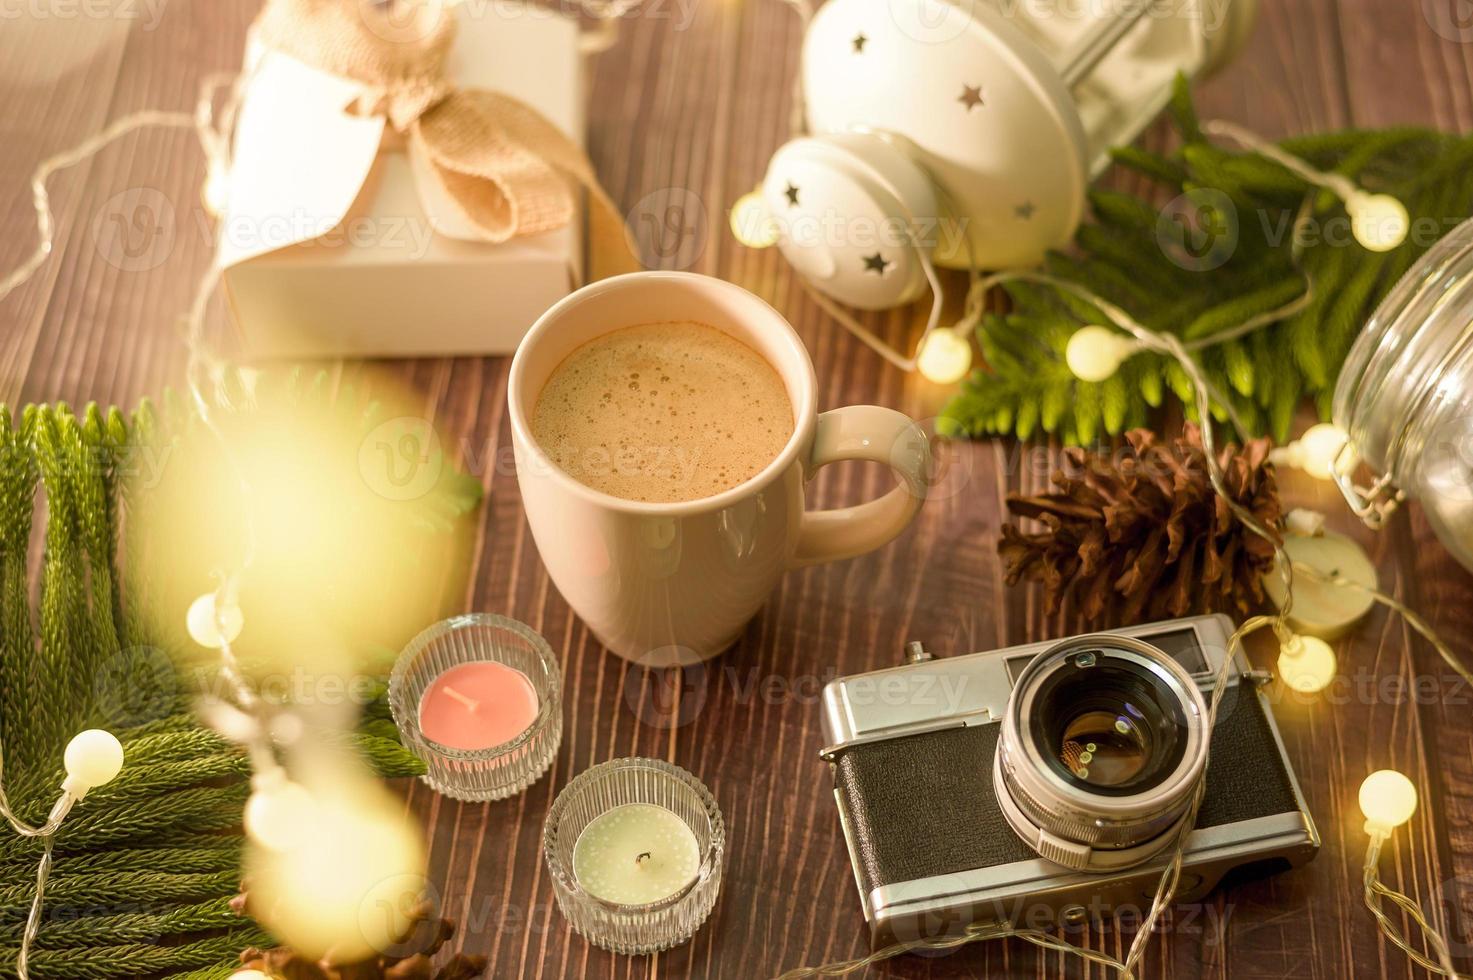 kaffeetasse über weihnachtsbeleuchtung bokeh zu hause auf holztischdekorationen. winterurlaubsdekoration, weihnachts- und neujahrsdekorationskonzept foto